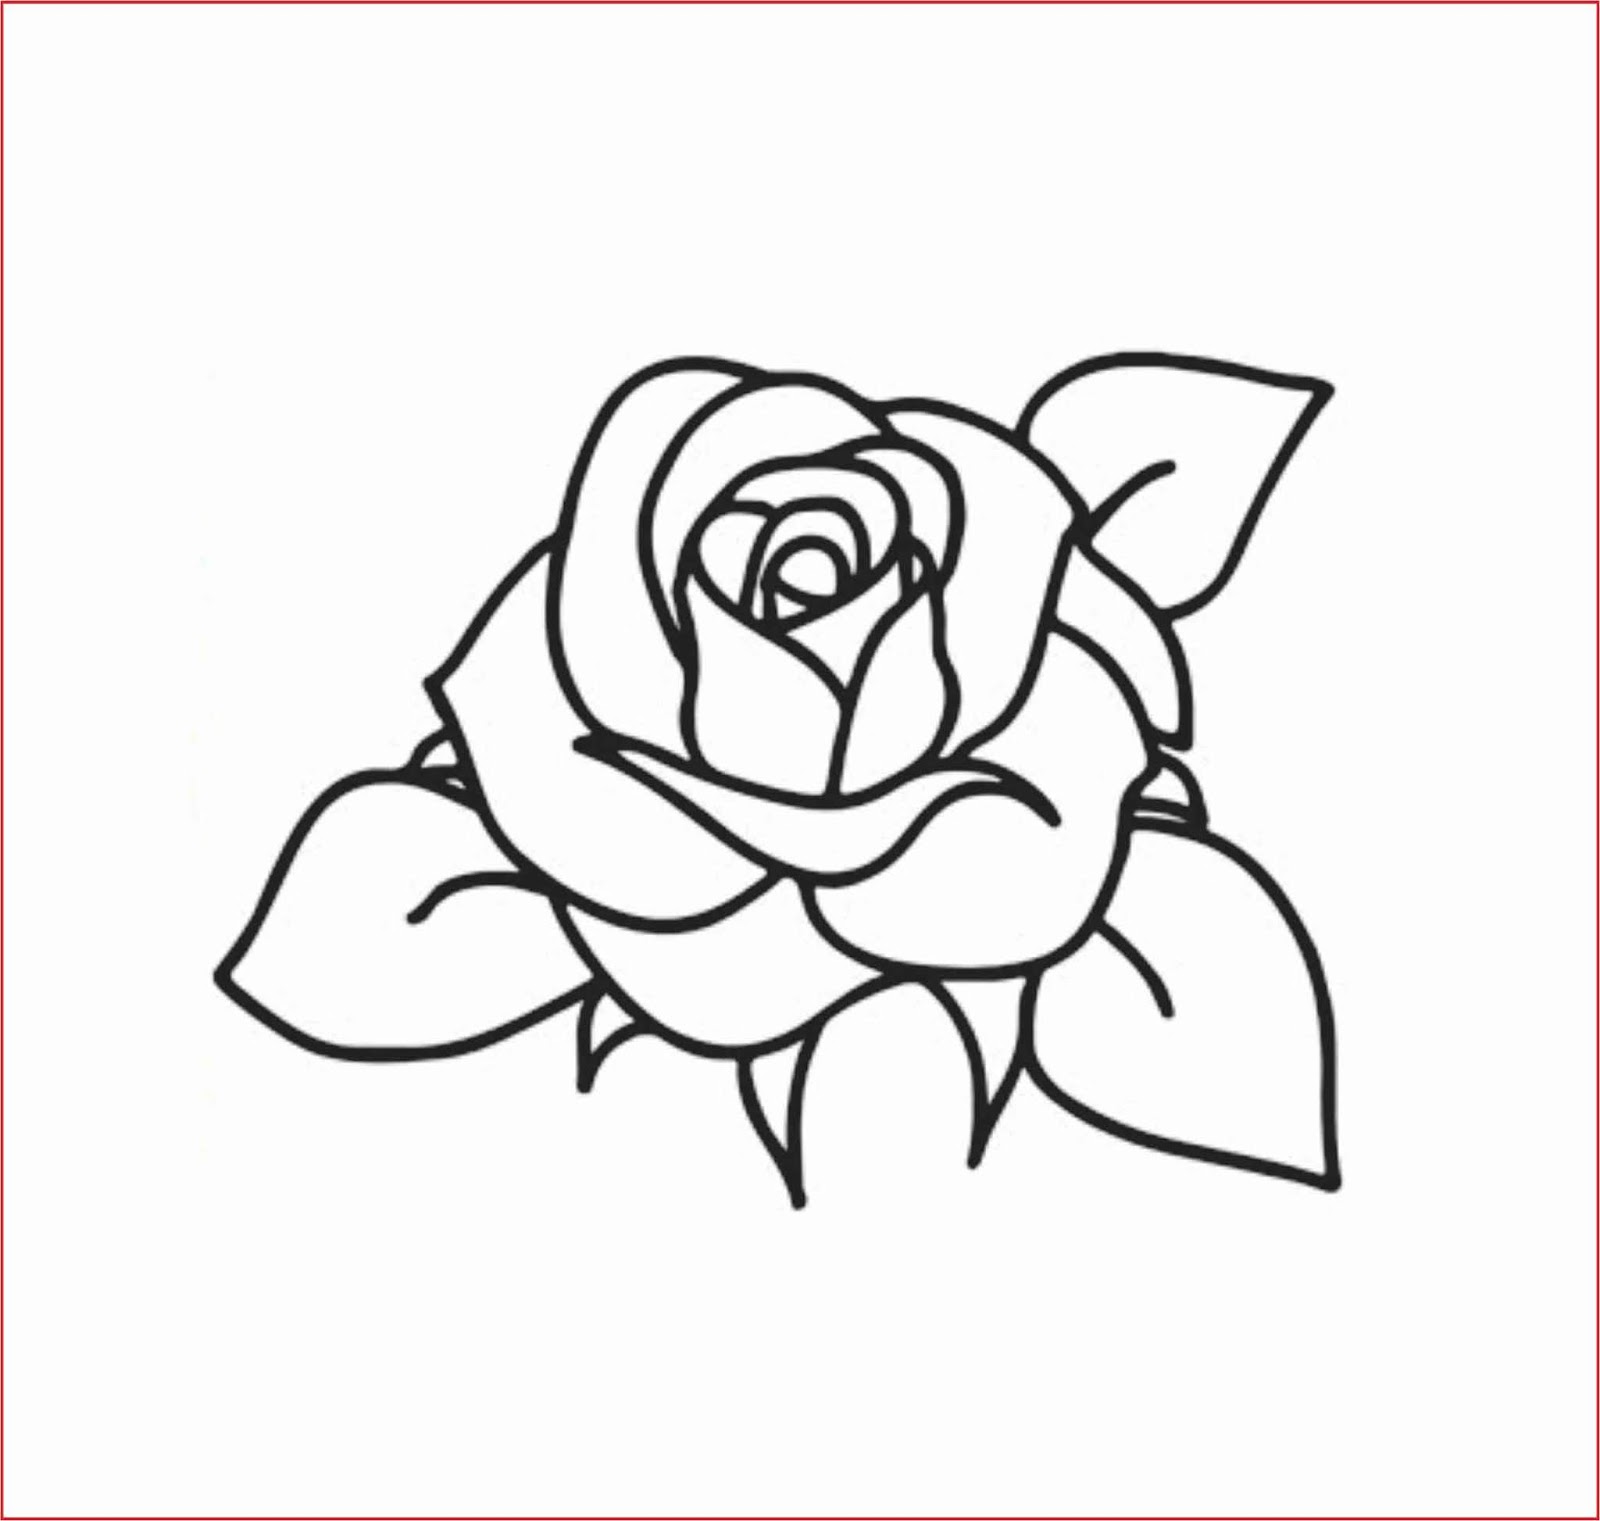 Gambar Lukisan Bunga Mawar : 12 Tips Menanam & Merawat BUNGA MAWAR di ...